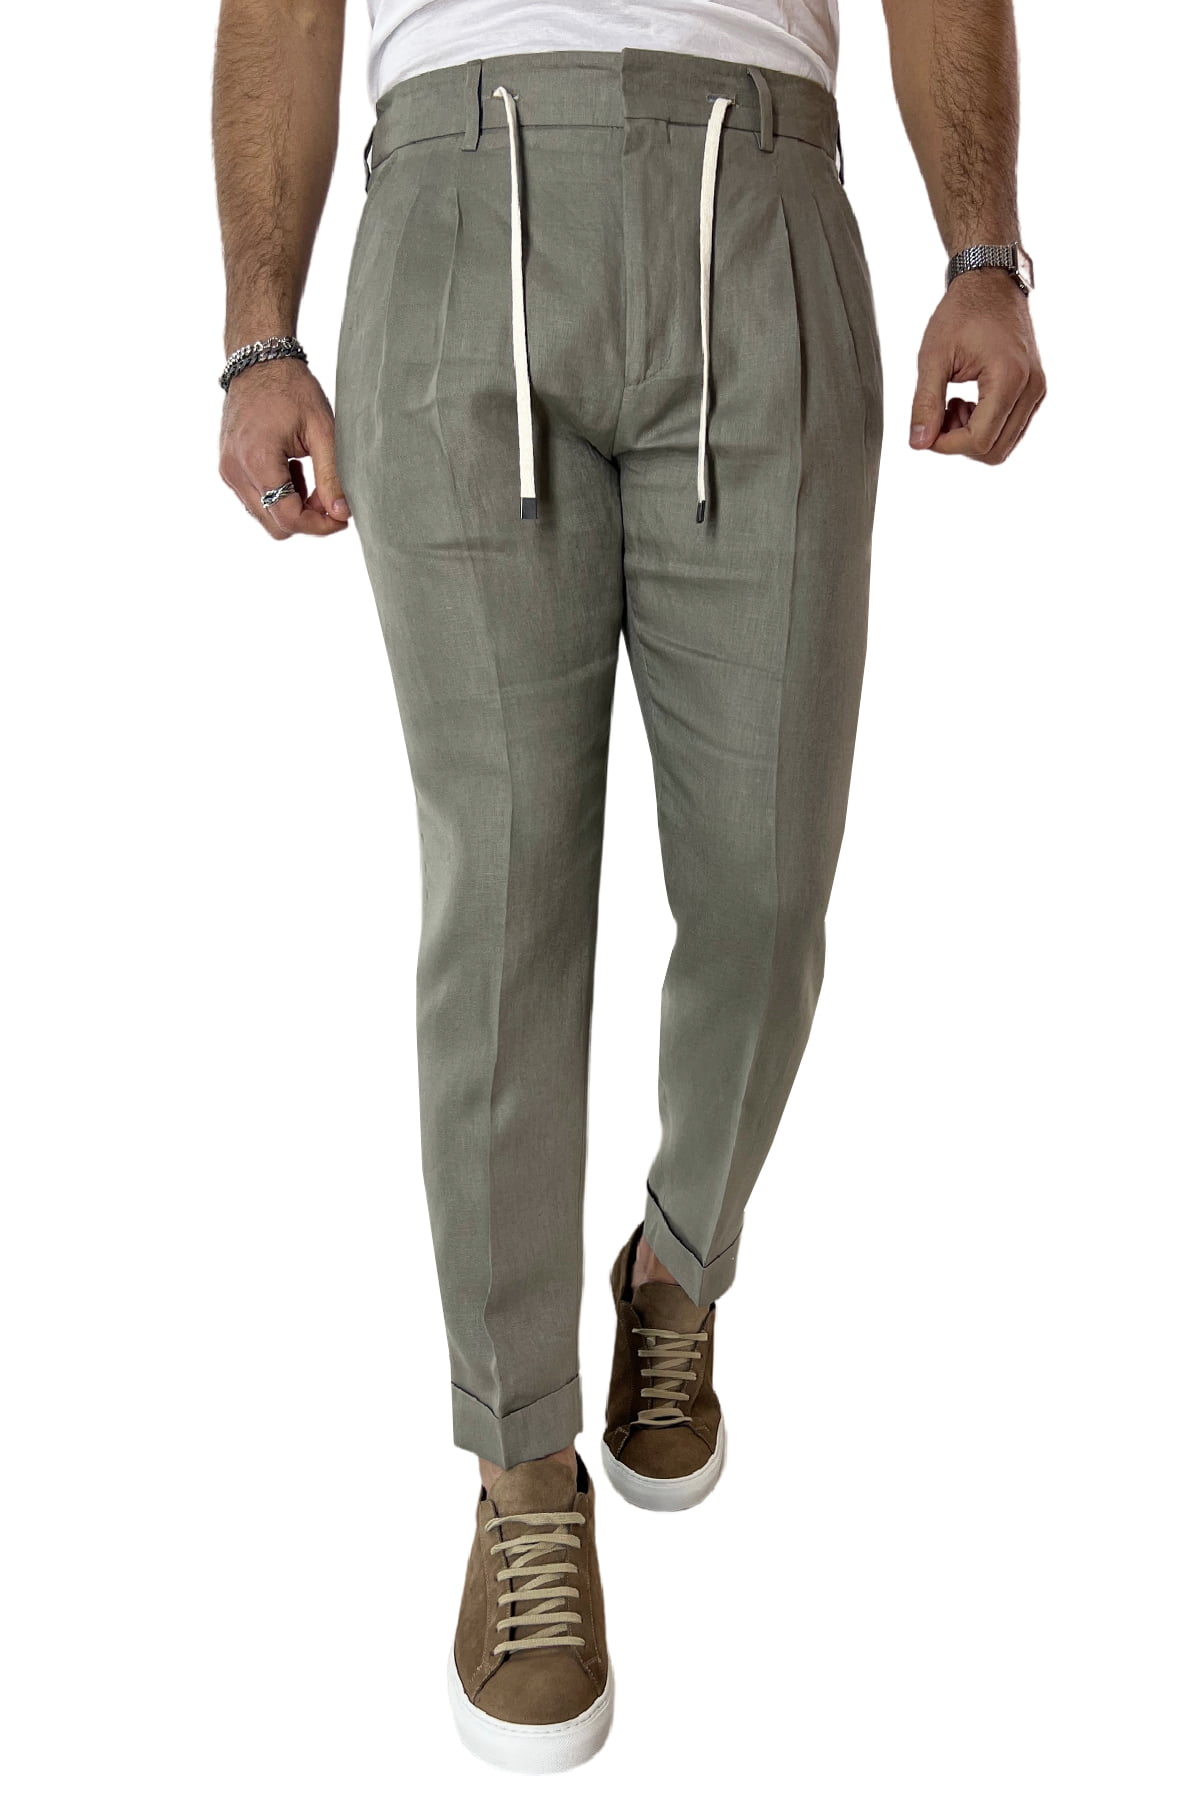 Pantalaccio uomo verde militare in lino 100% tasca america con doppia pence e laccio in vita risvolto 4cm